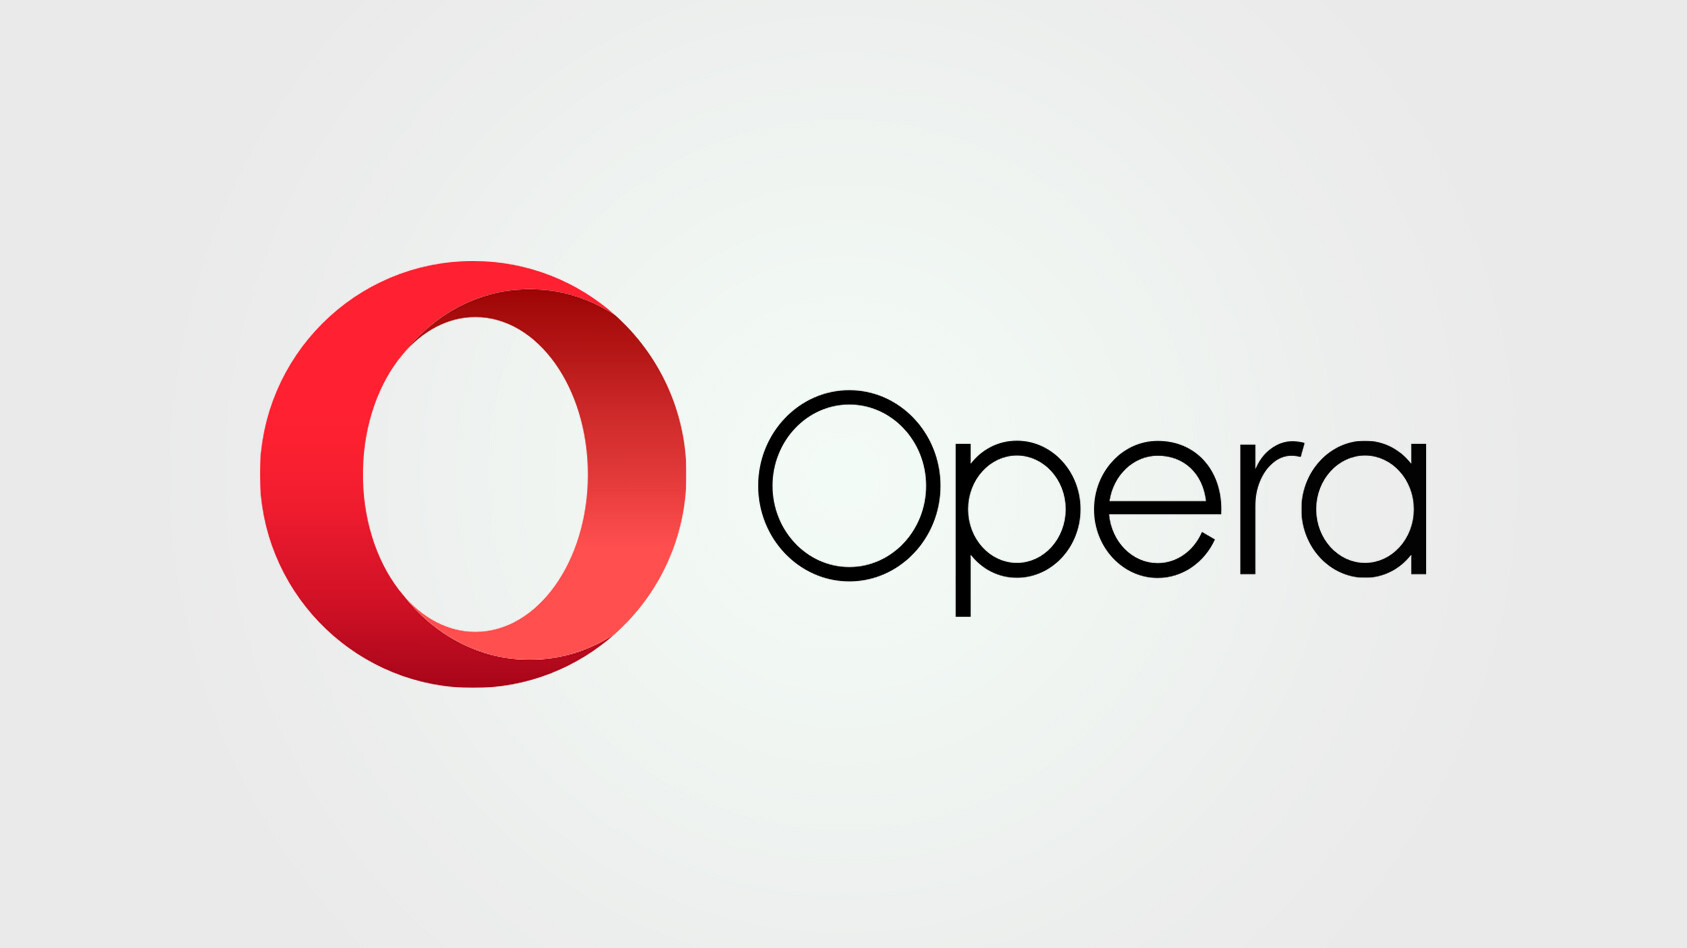 متصفح Opera iOS الجديد يعتمد على الذكاء الاصطناعي